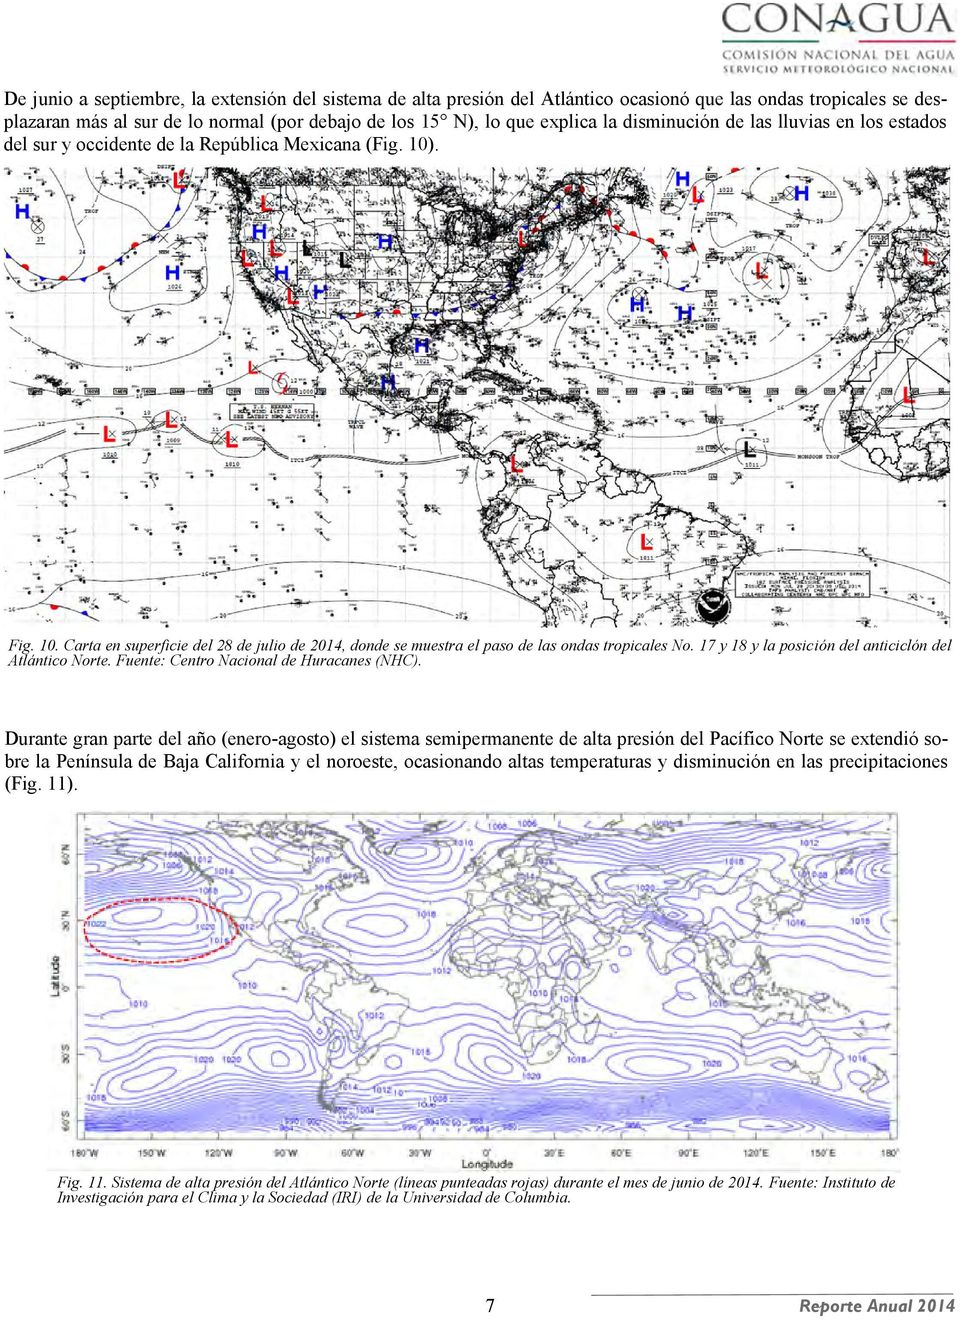 17 y 18 y la posición del anticiclón del Atlántico Norte. Fuente: Centro Nacional de Huracanes (NHC).